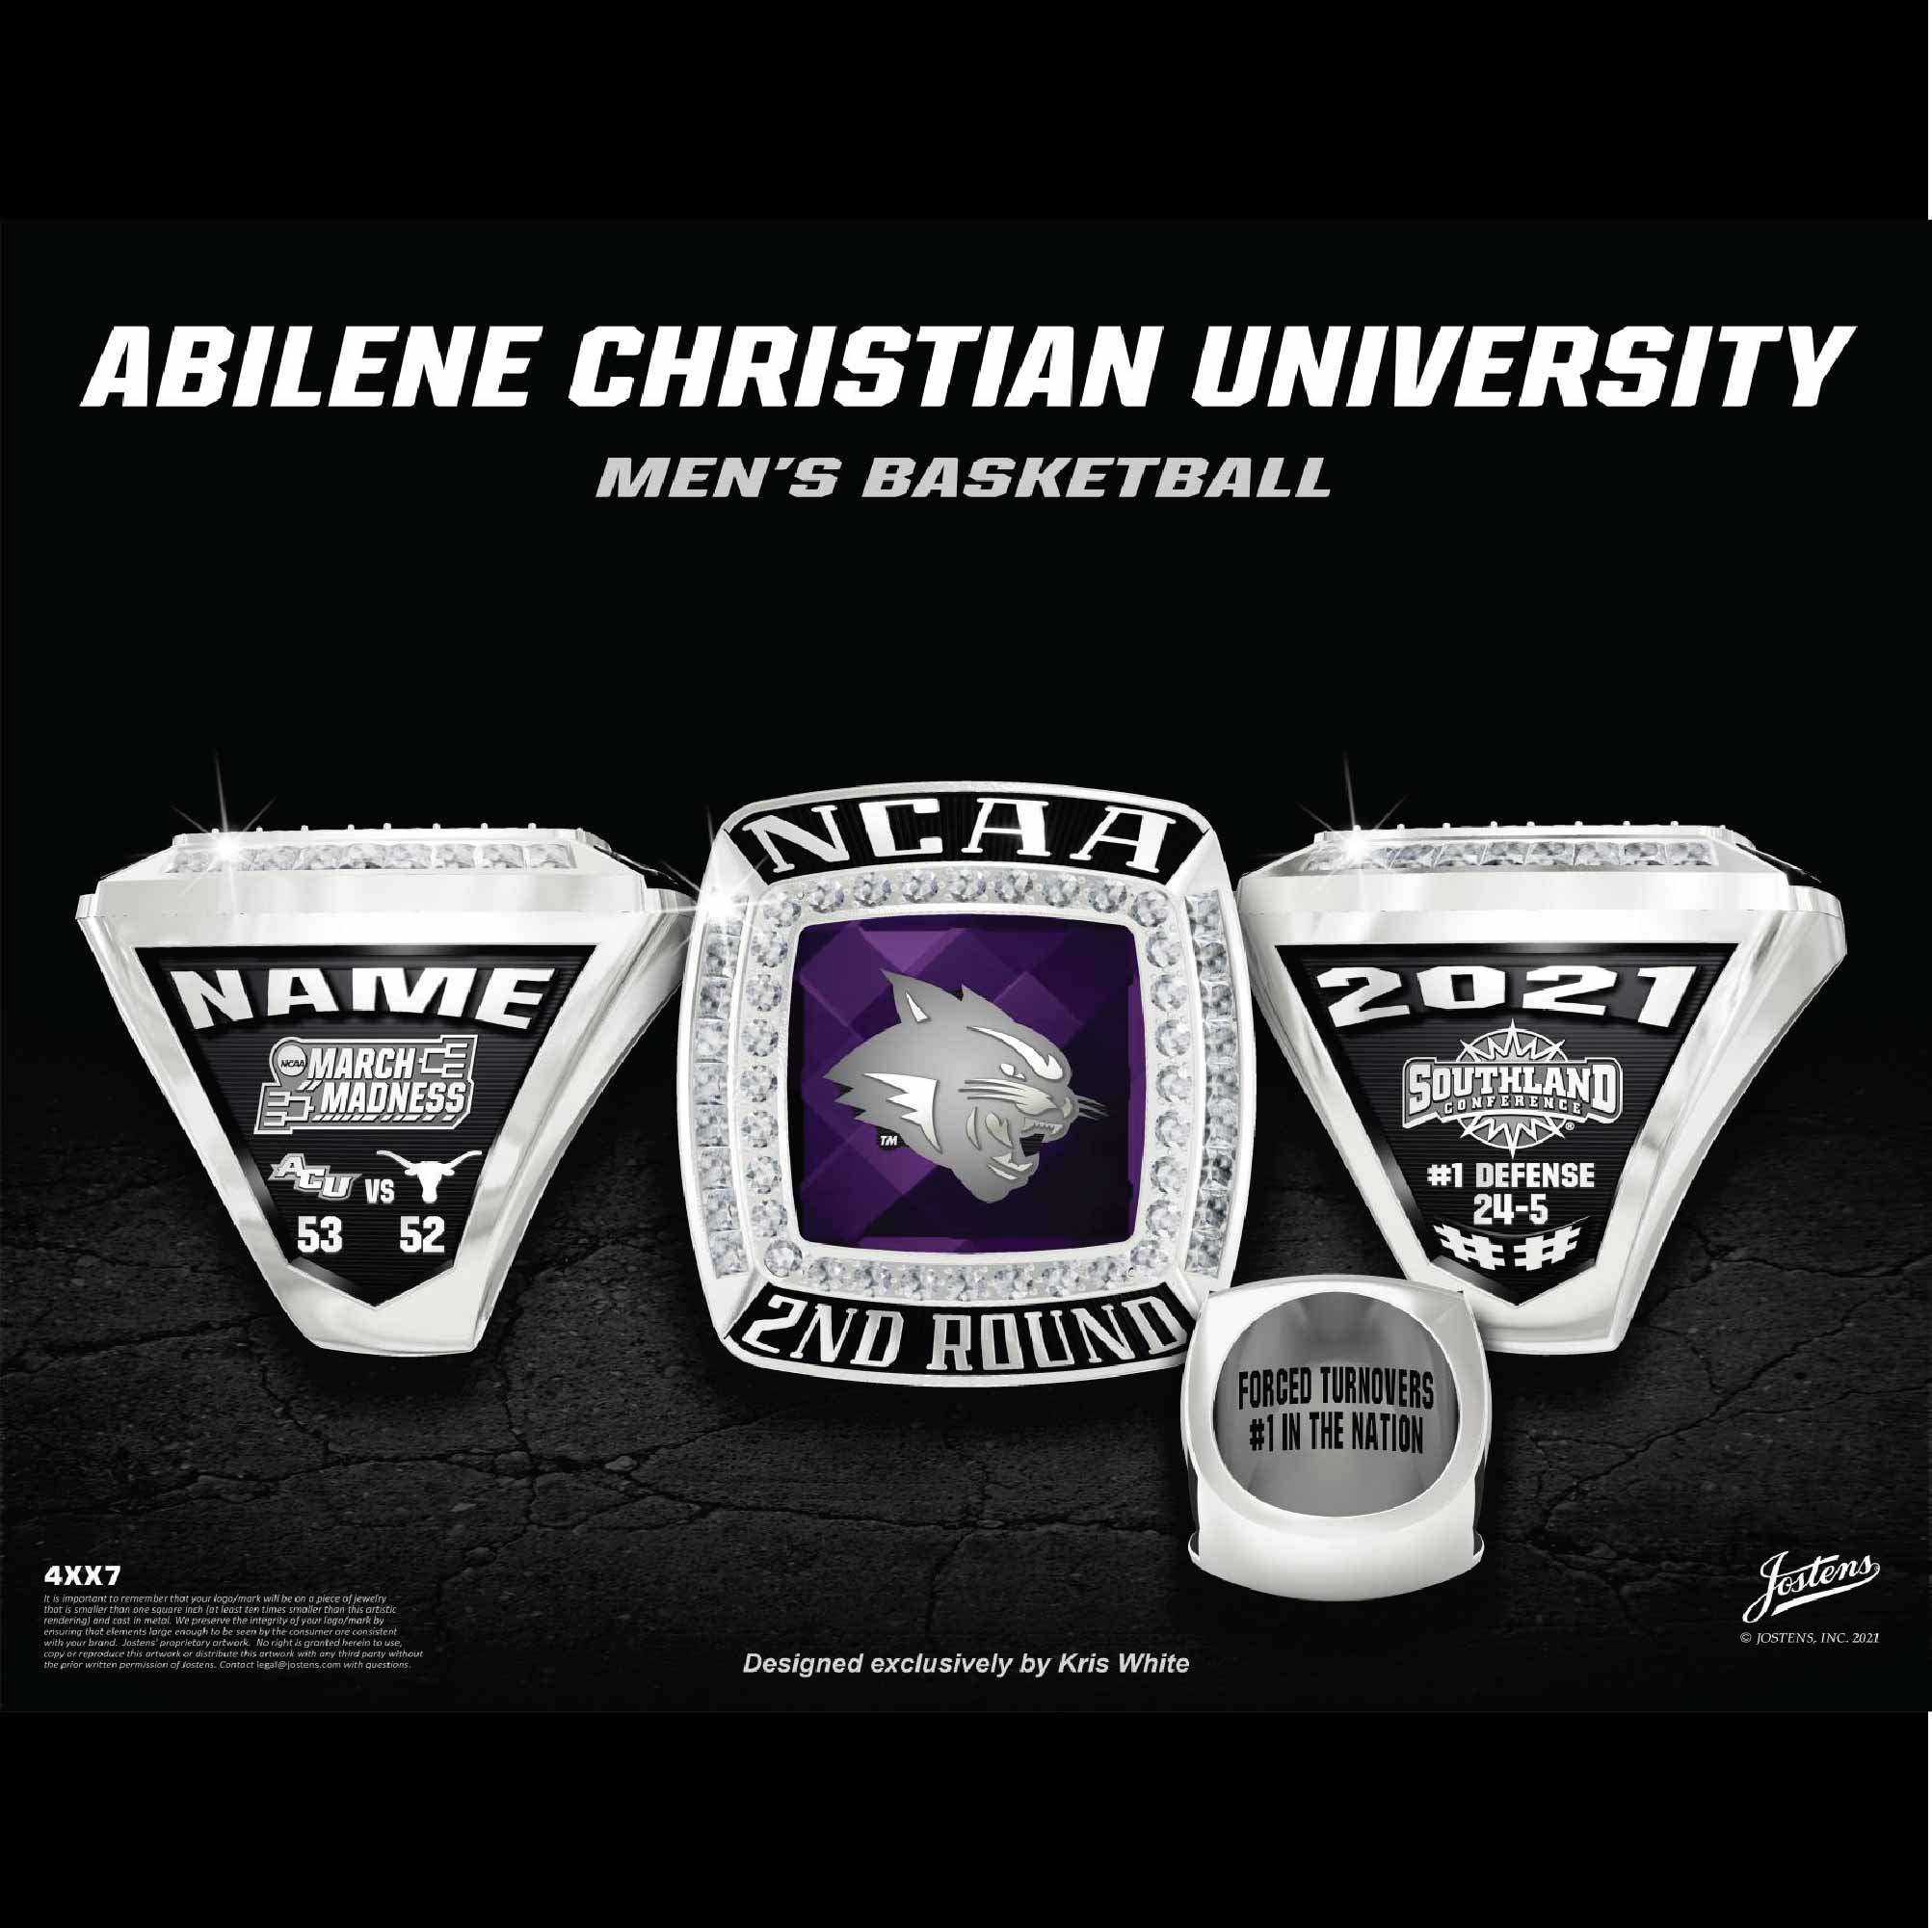 Abilene Christian University Men's Basketball 2021 NCAA Championship Ring